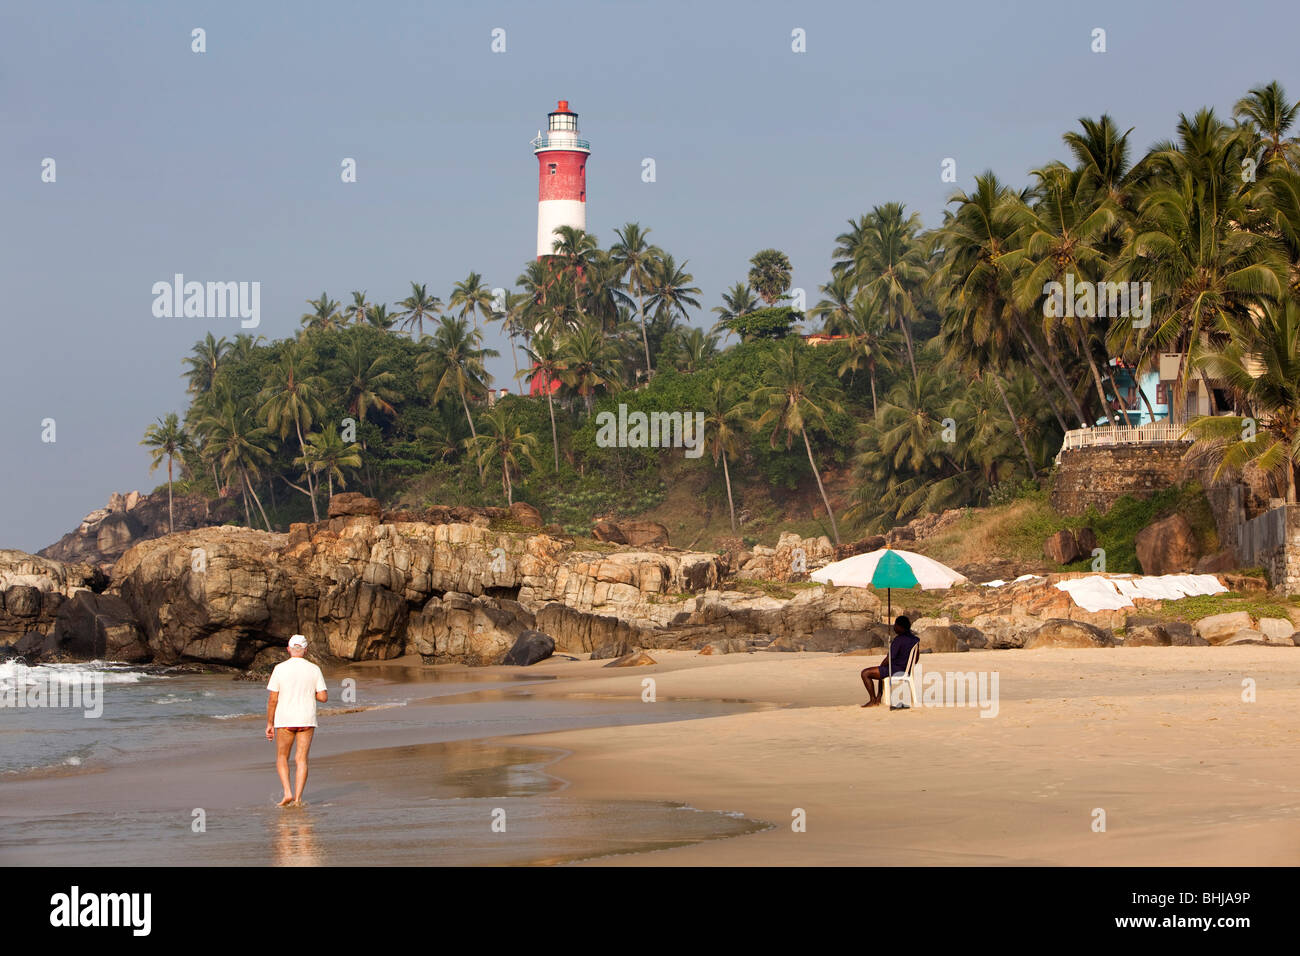 India, Kerala, Kovalam, Vizhinjam lighthouse Stock Photo